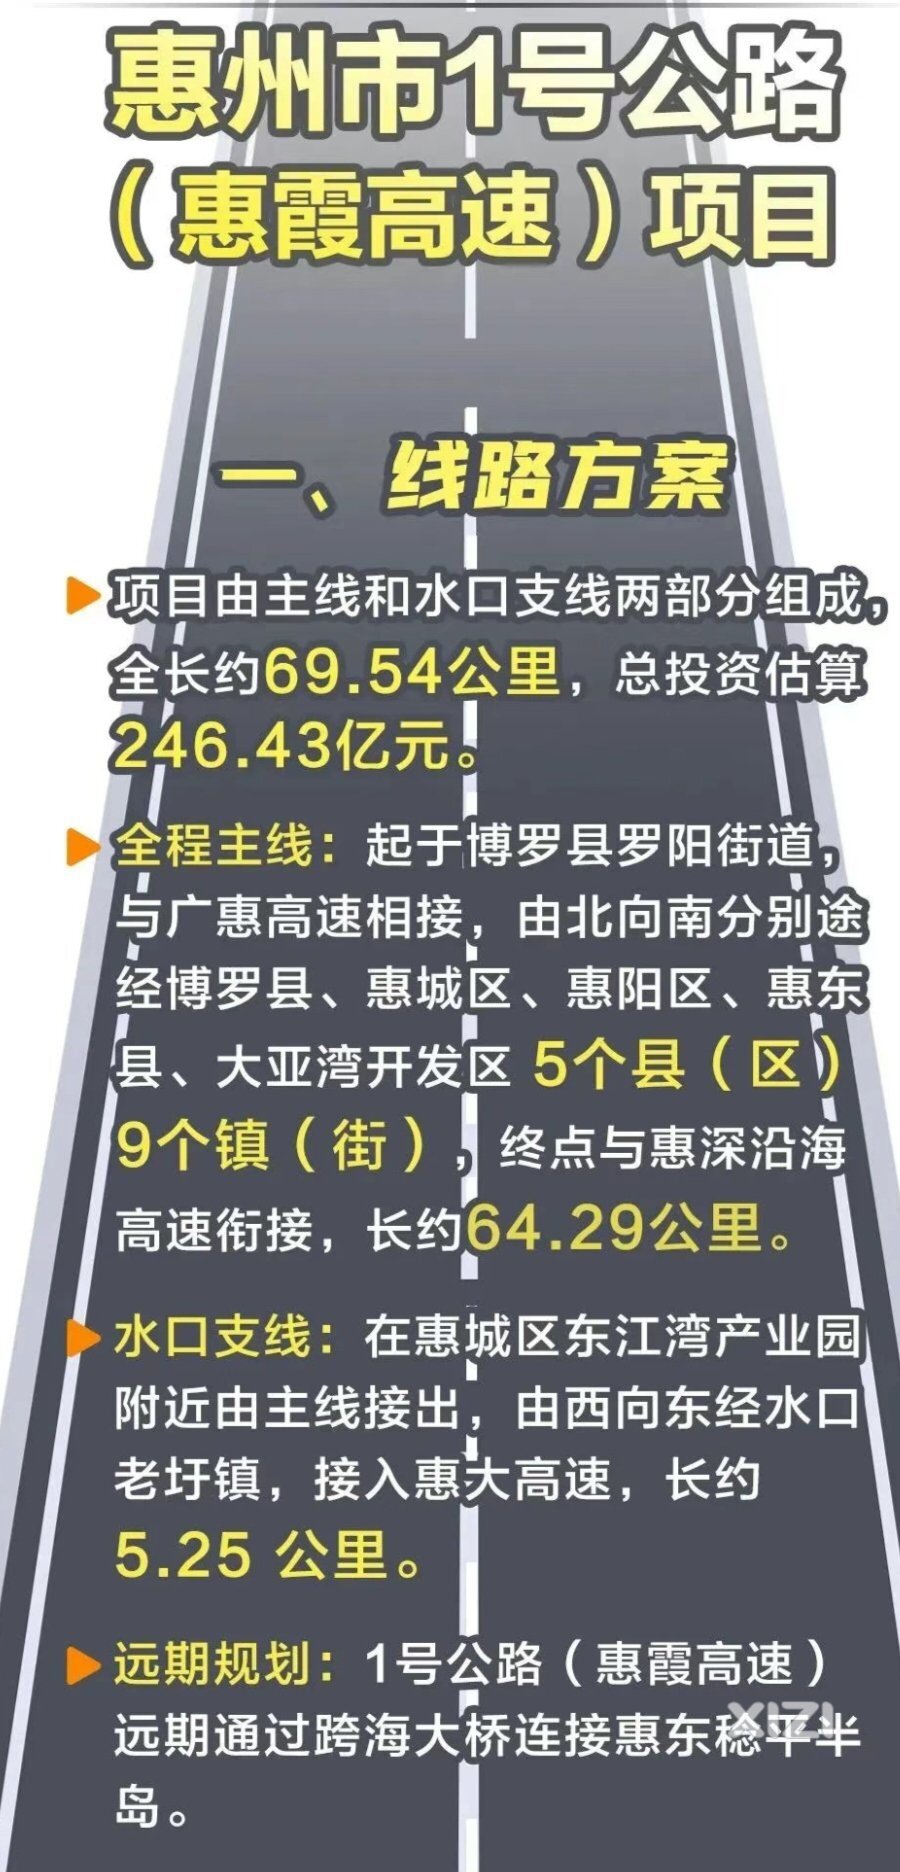 惠州湾高速惠东支线或未来10年不会建设了。这里没有提到